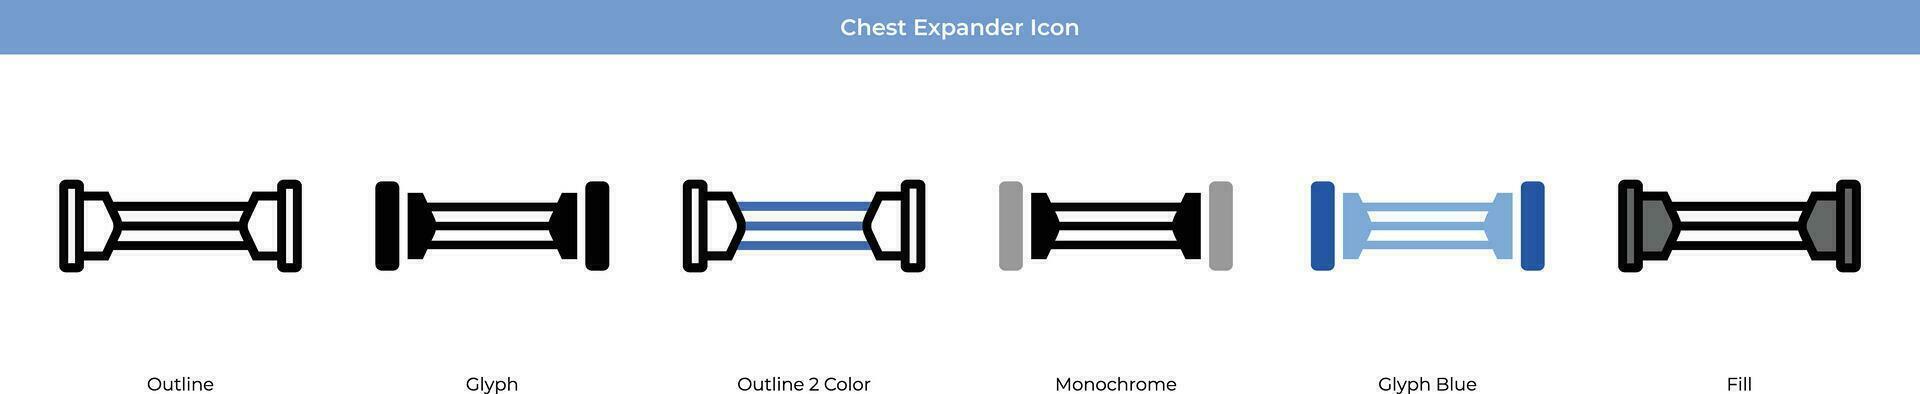 bröst expander vektor ikon